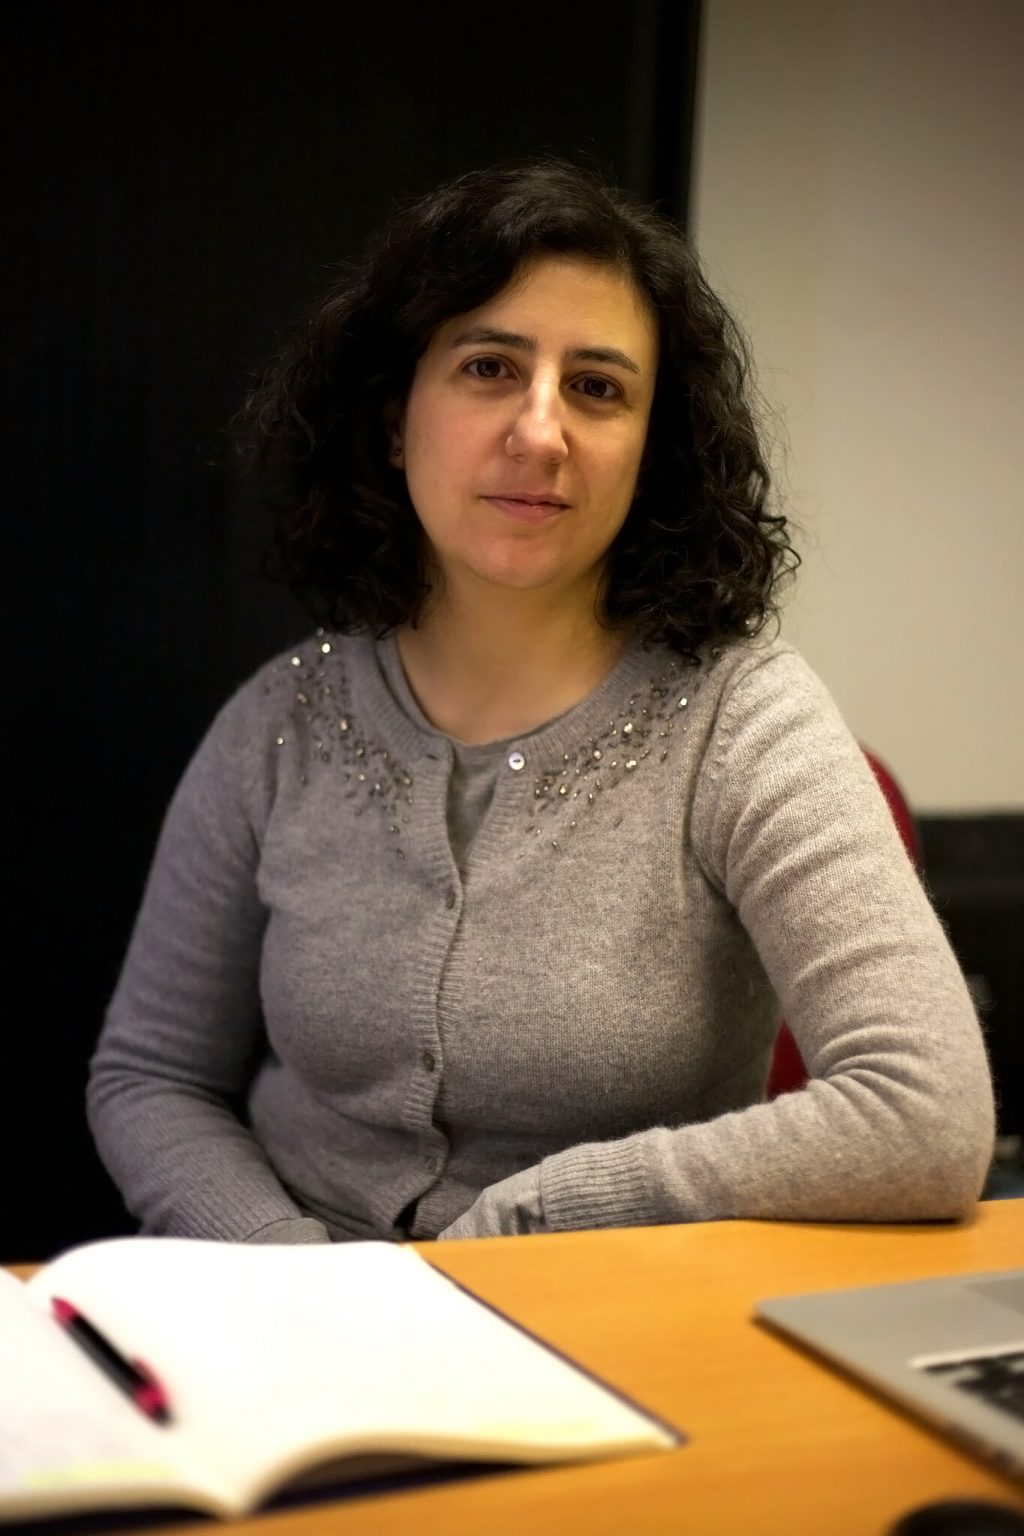 Científicas españolas: Alicia Calderón, investigadora española que ha participado en el descubrimiento del Bosón de Higgs